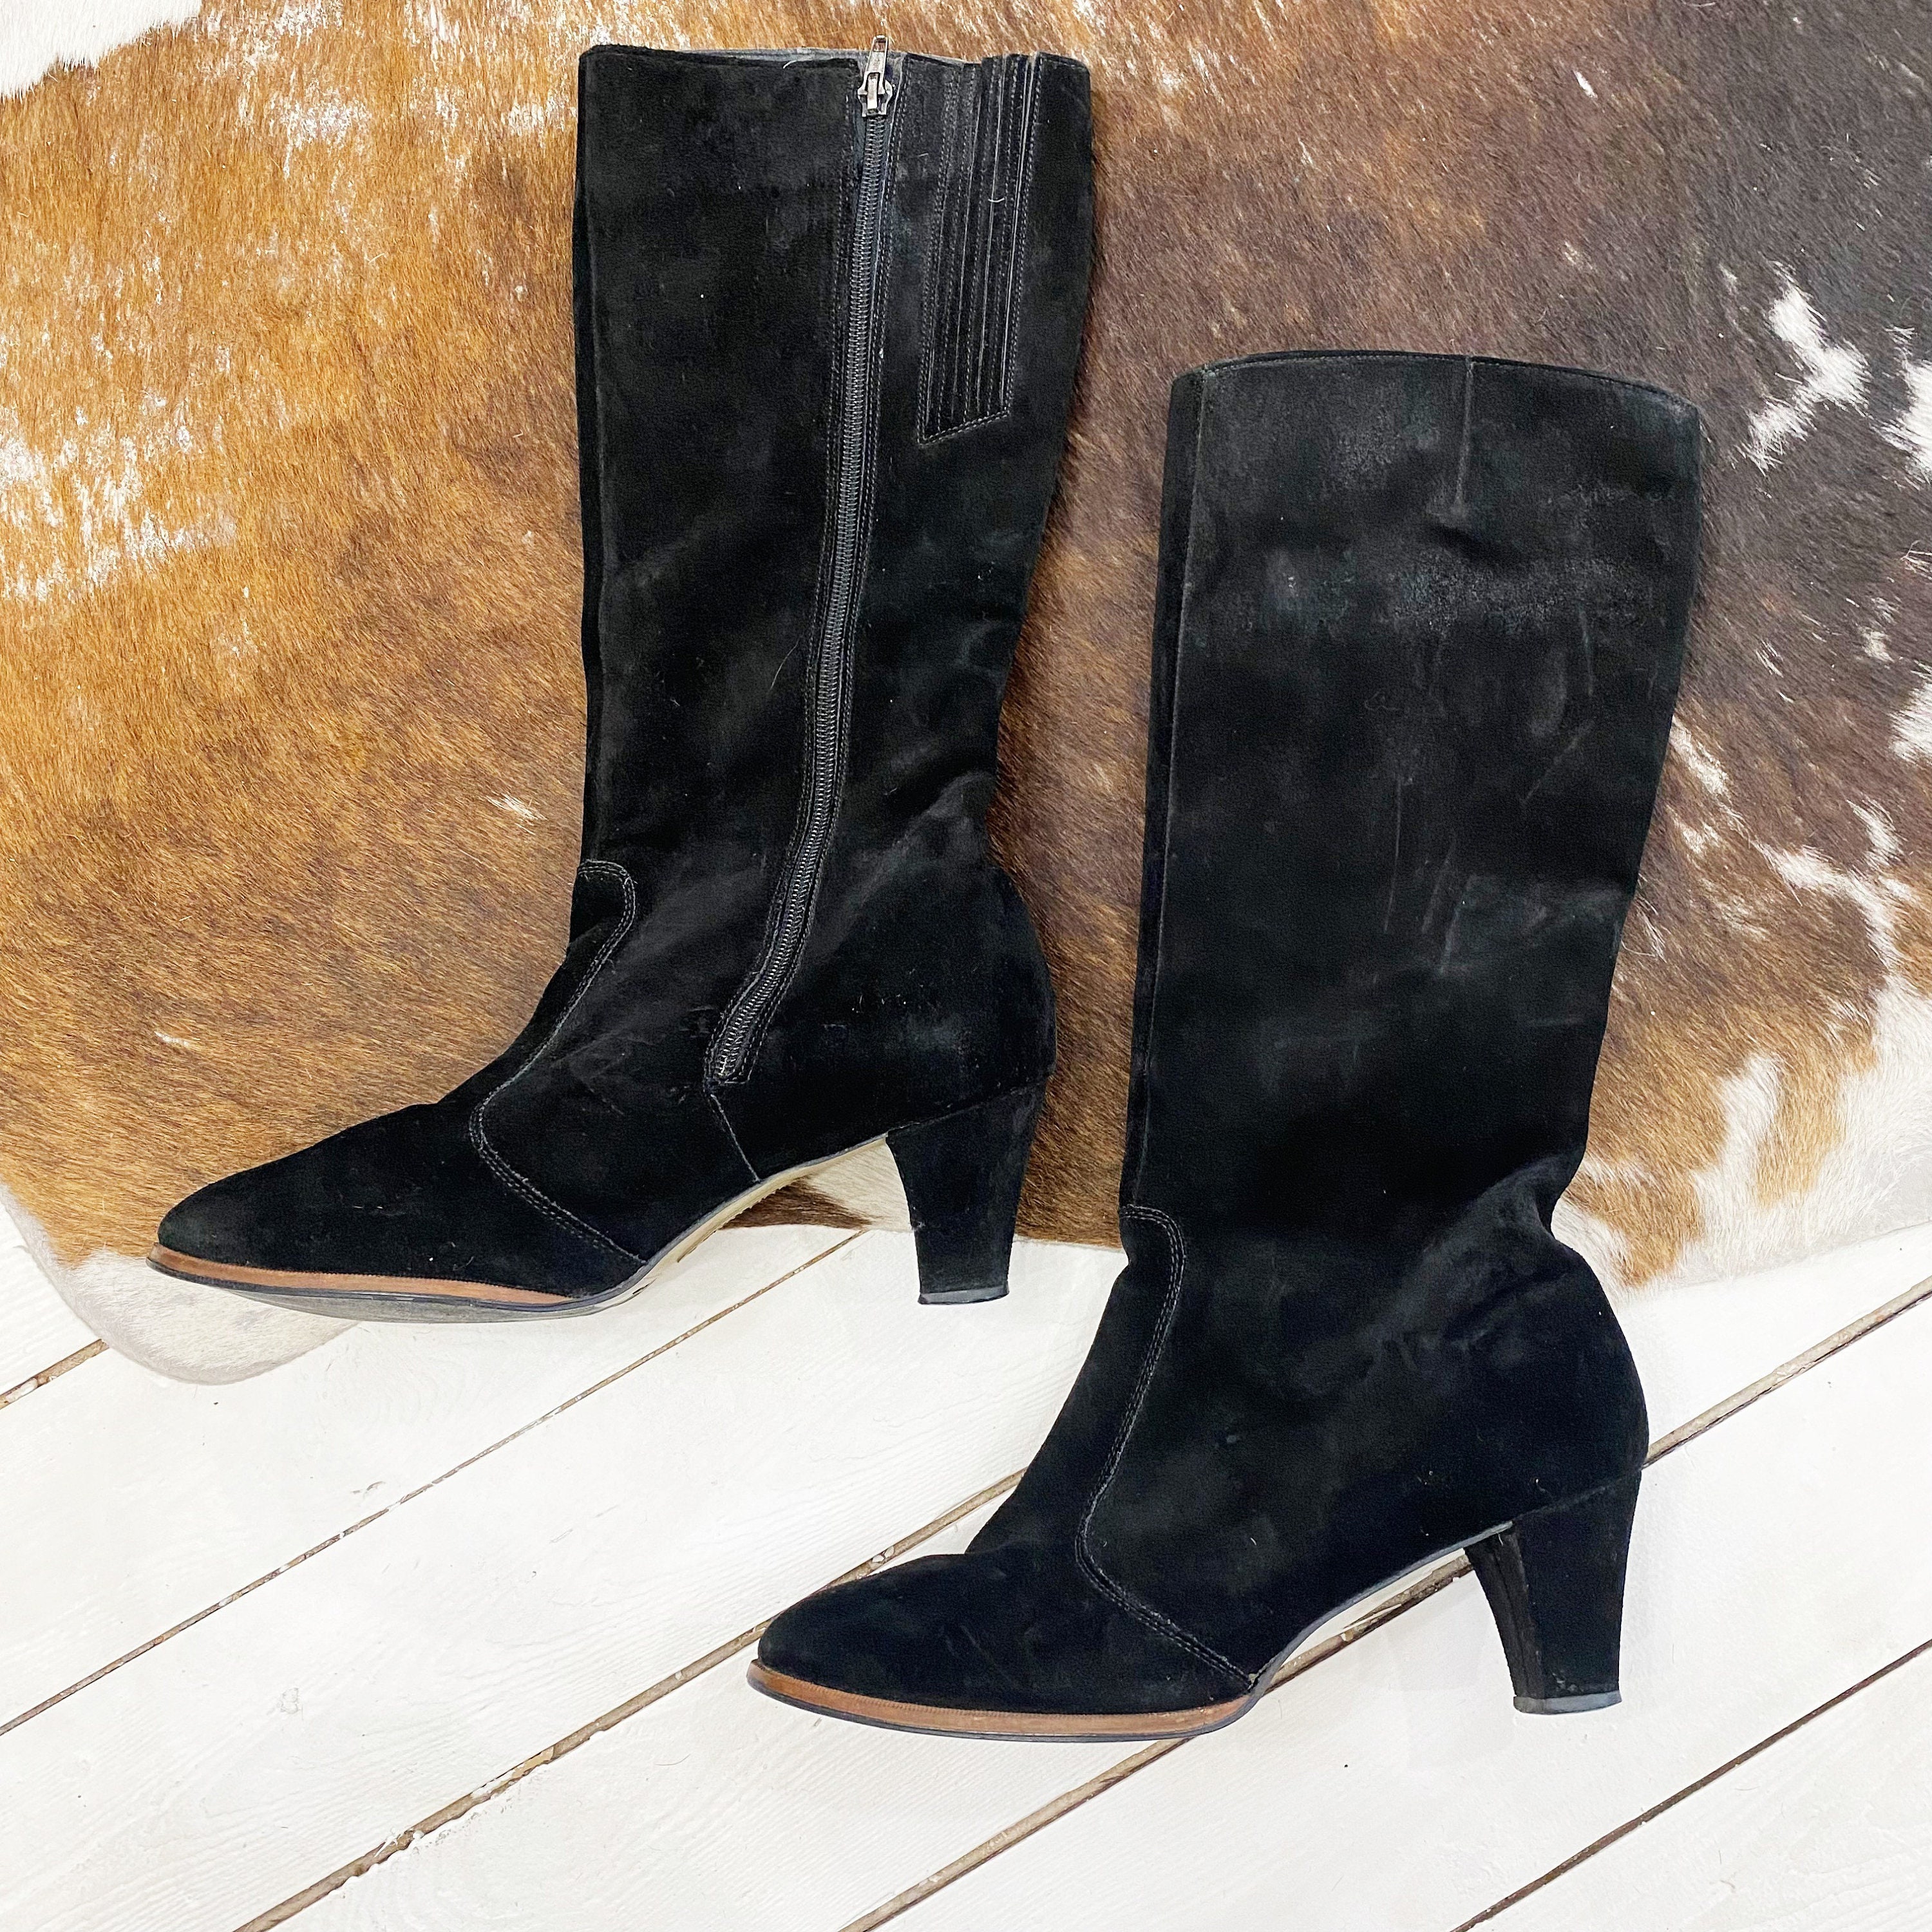 Schoenen damesschoenen Laarzen Regen Size 9.5. Made in Canada fleece lined black suede slight heel winter boots & Sneeuwlaarzen 